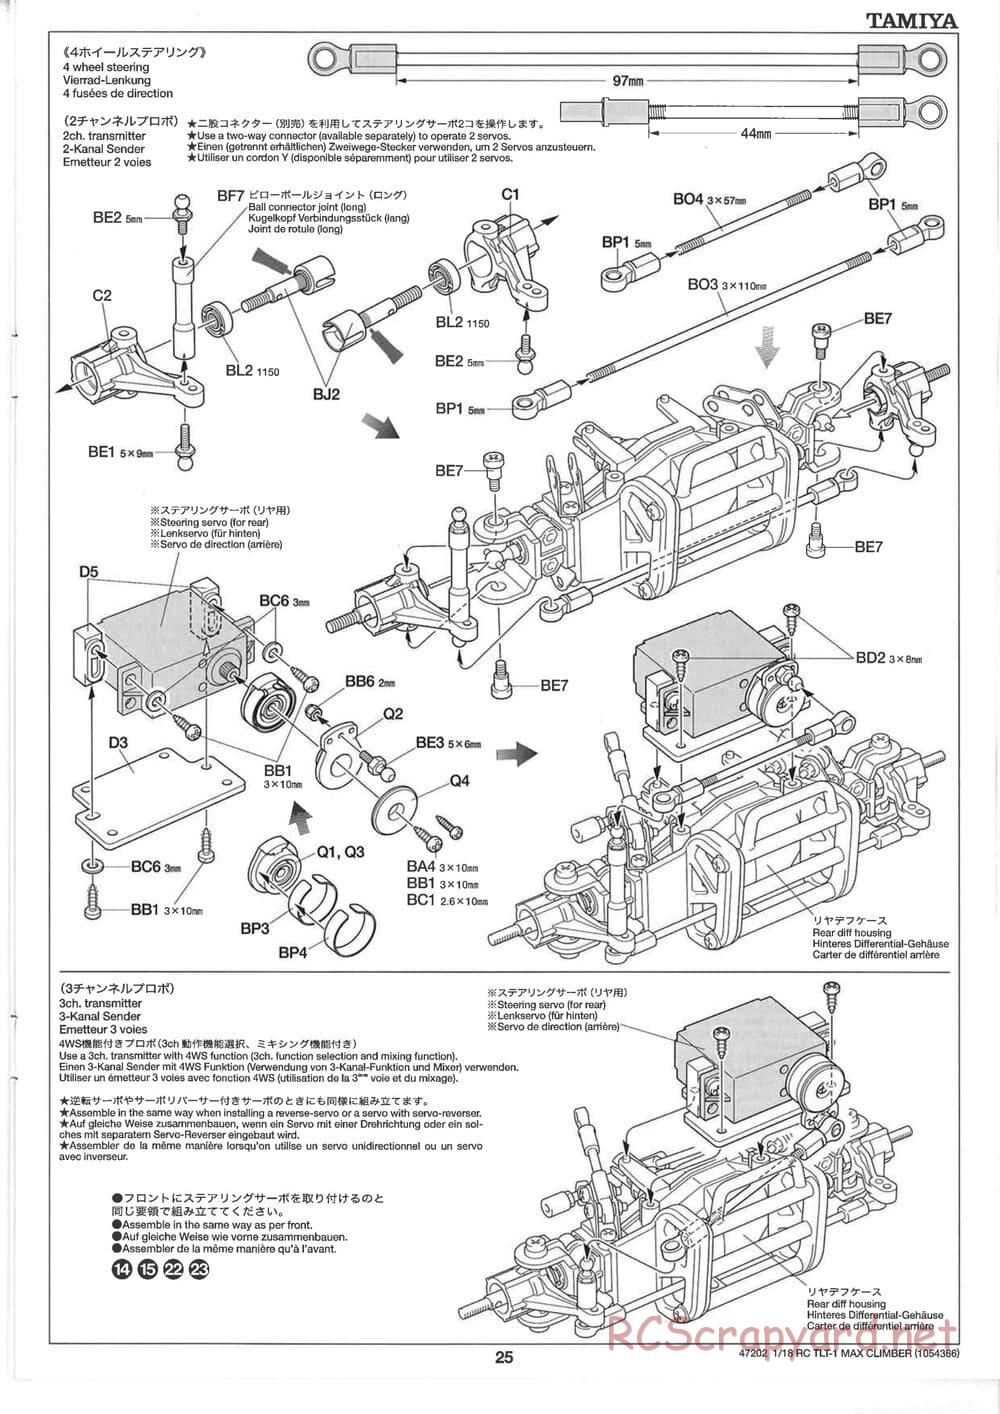 Tamiya - Max Climber - TLT-1 Chassis - Manual - Page 25